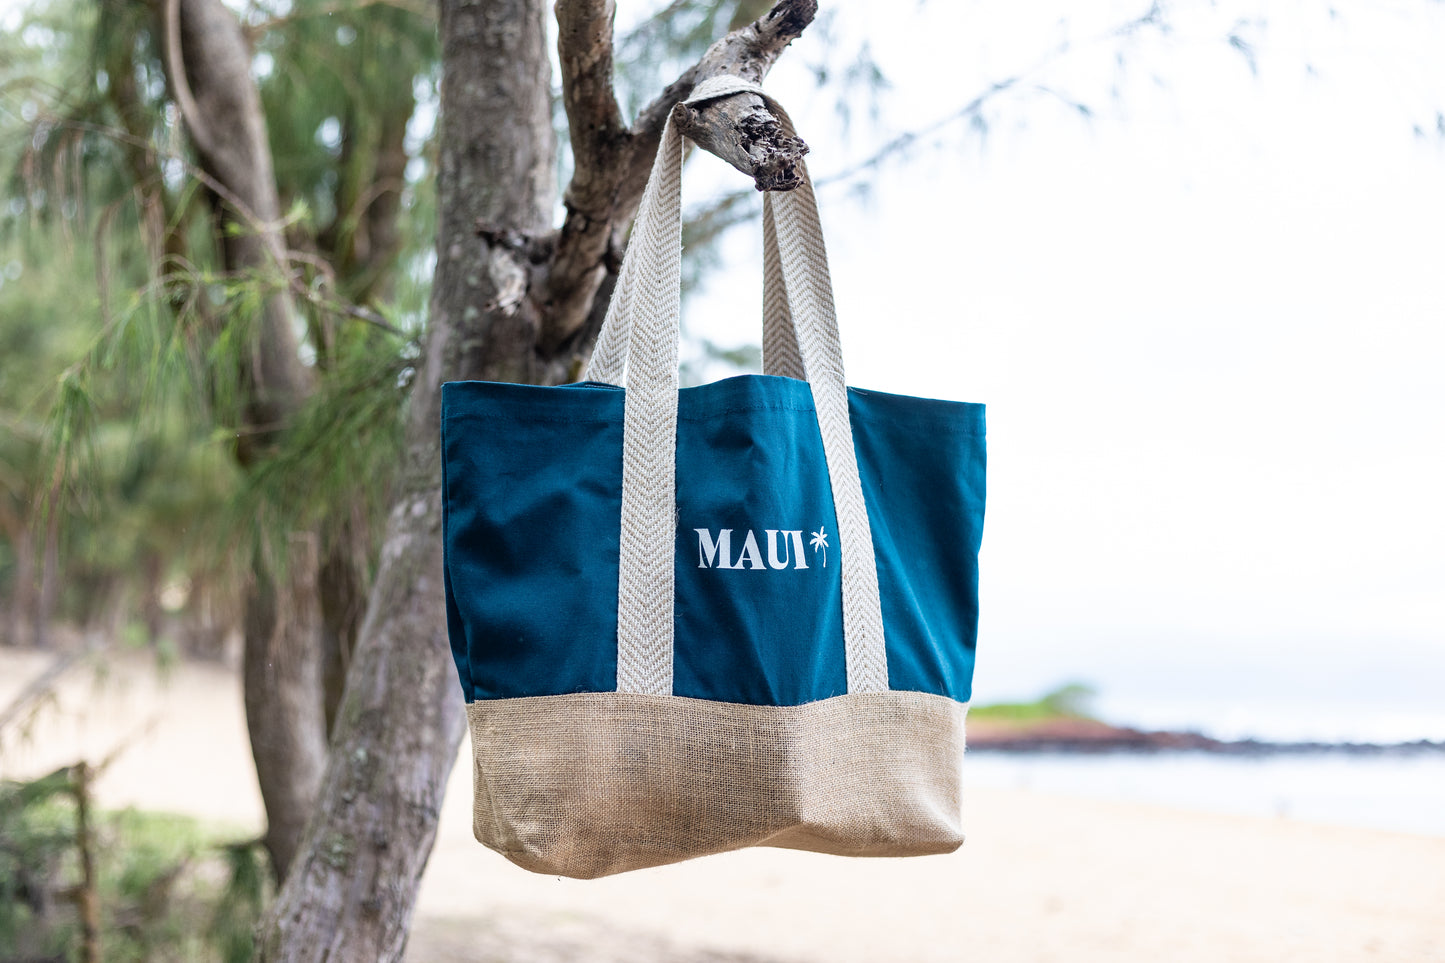 Island Vibes: Maui Palm Tree County Line Bag